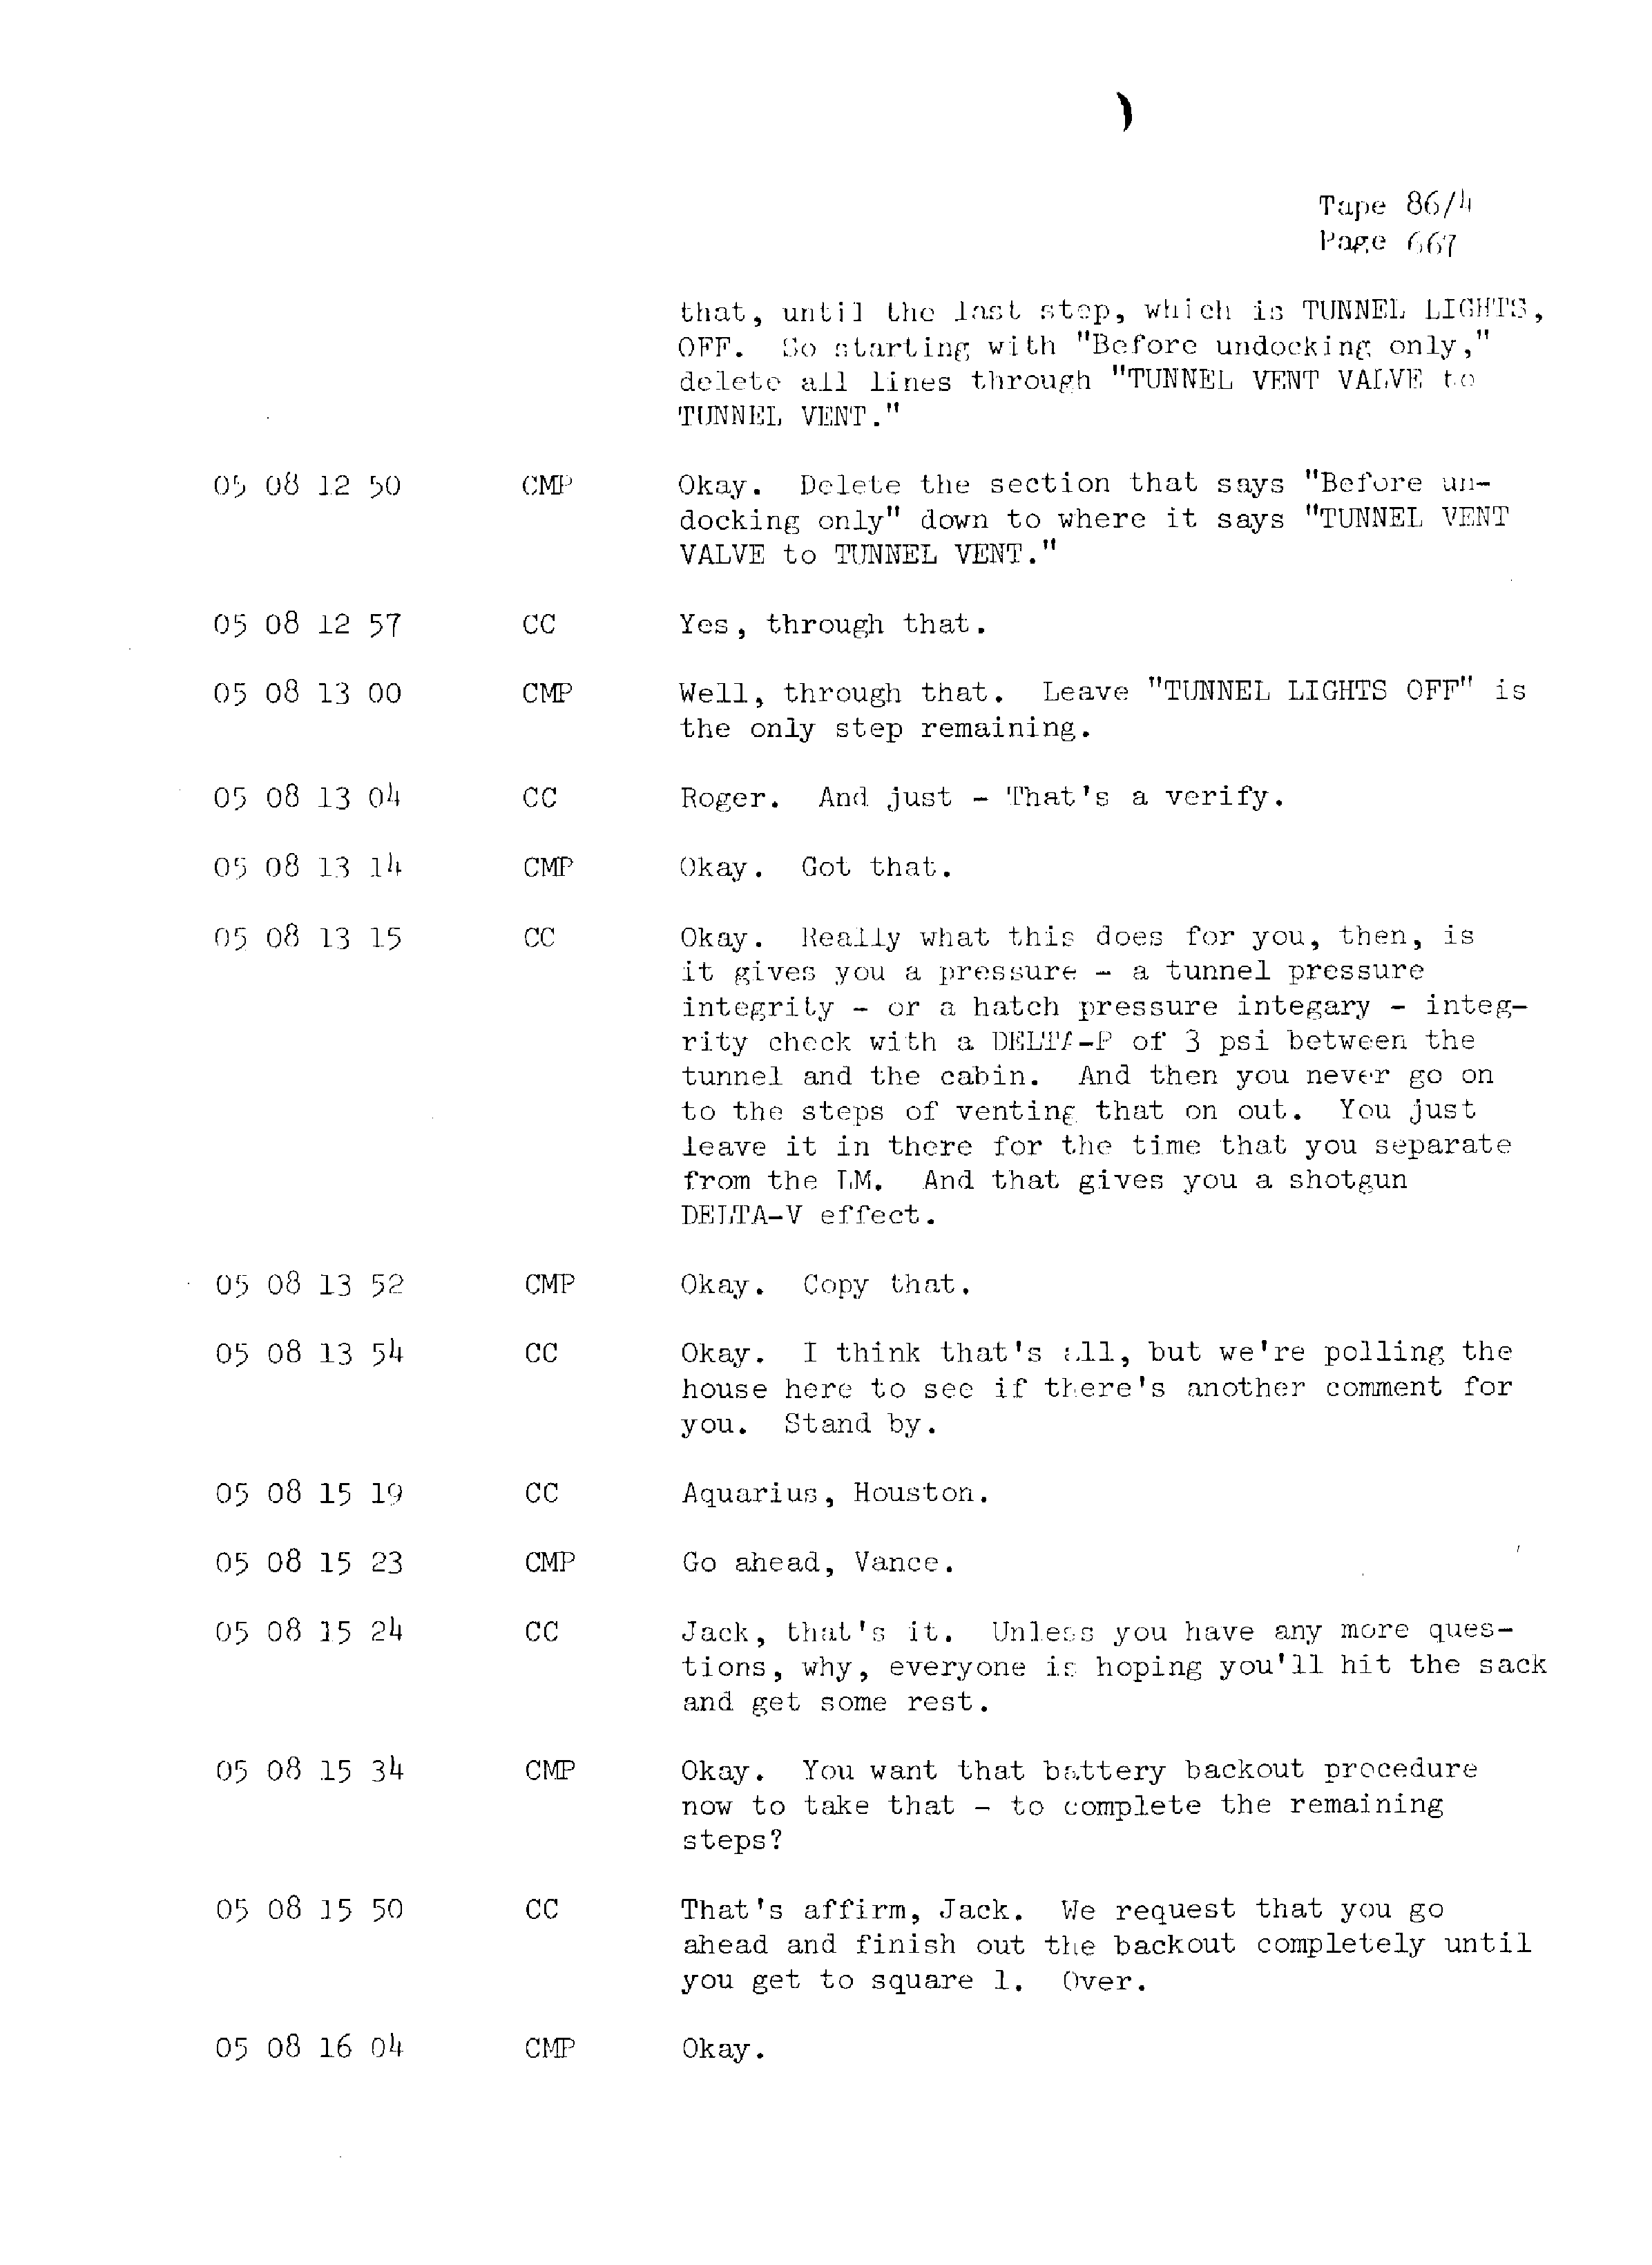 Page 674 of Apollo 13’s original transcript